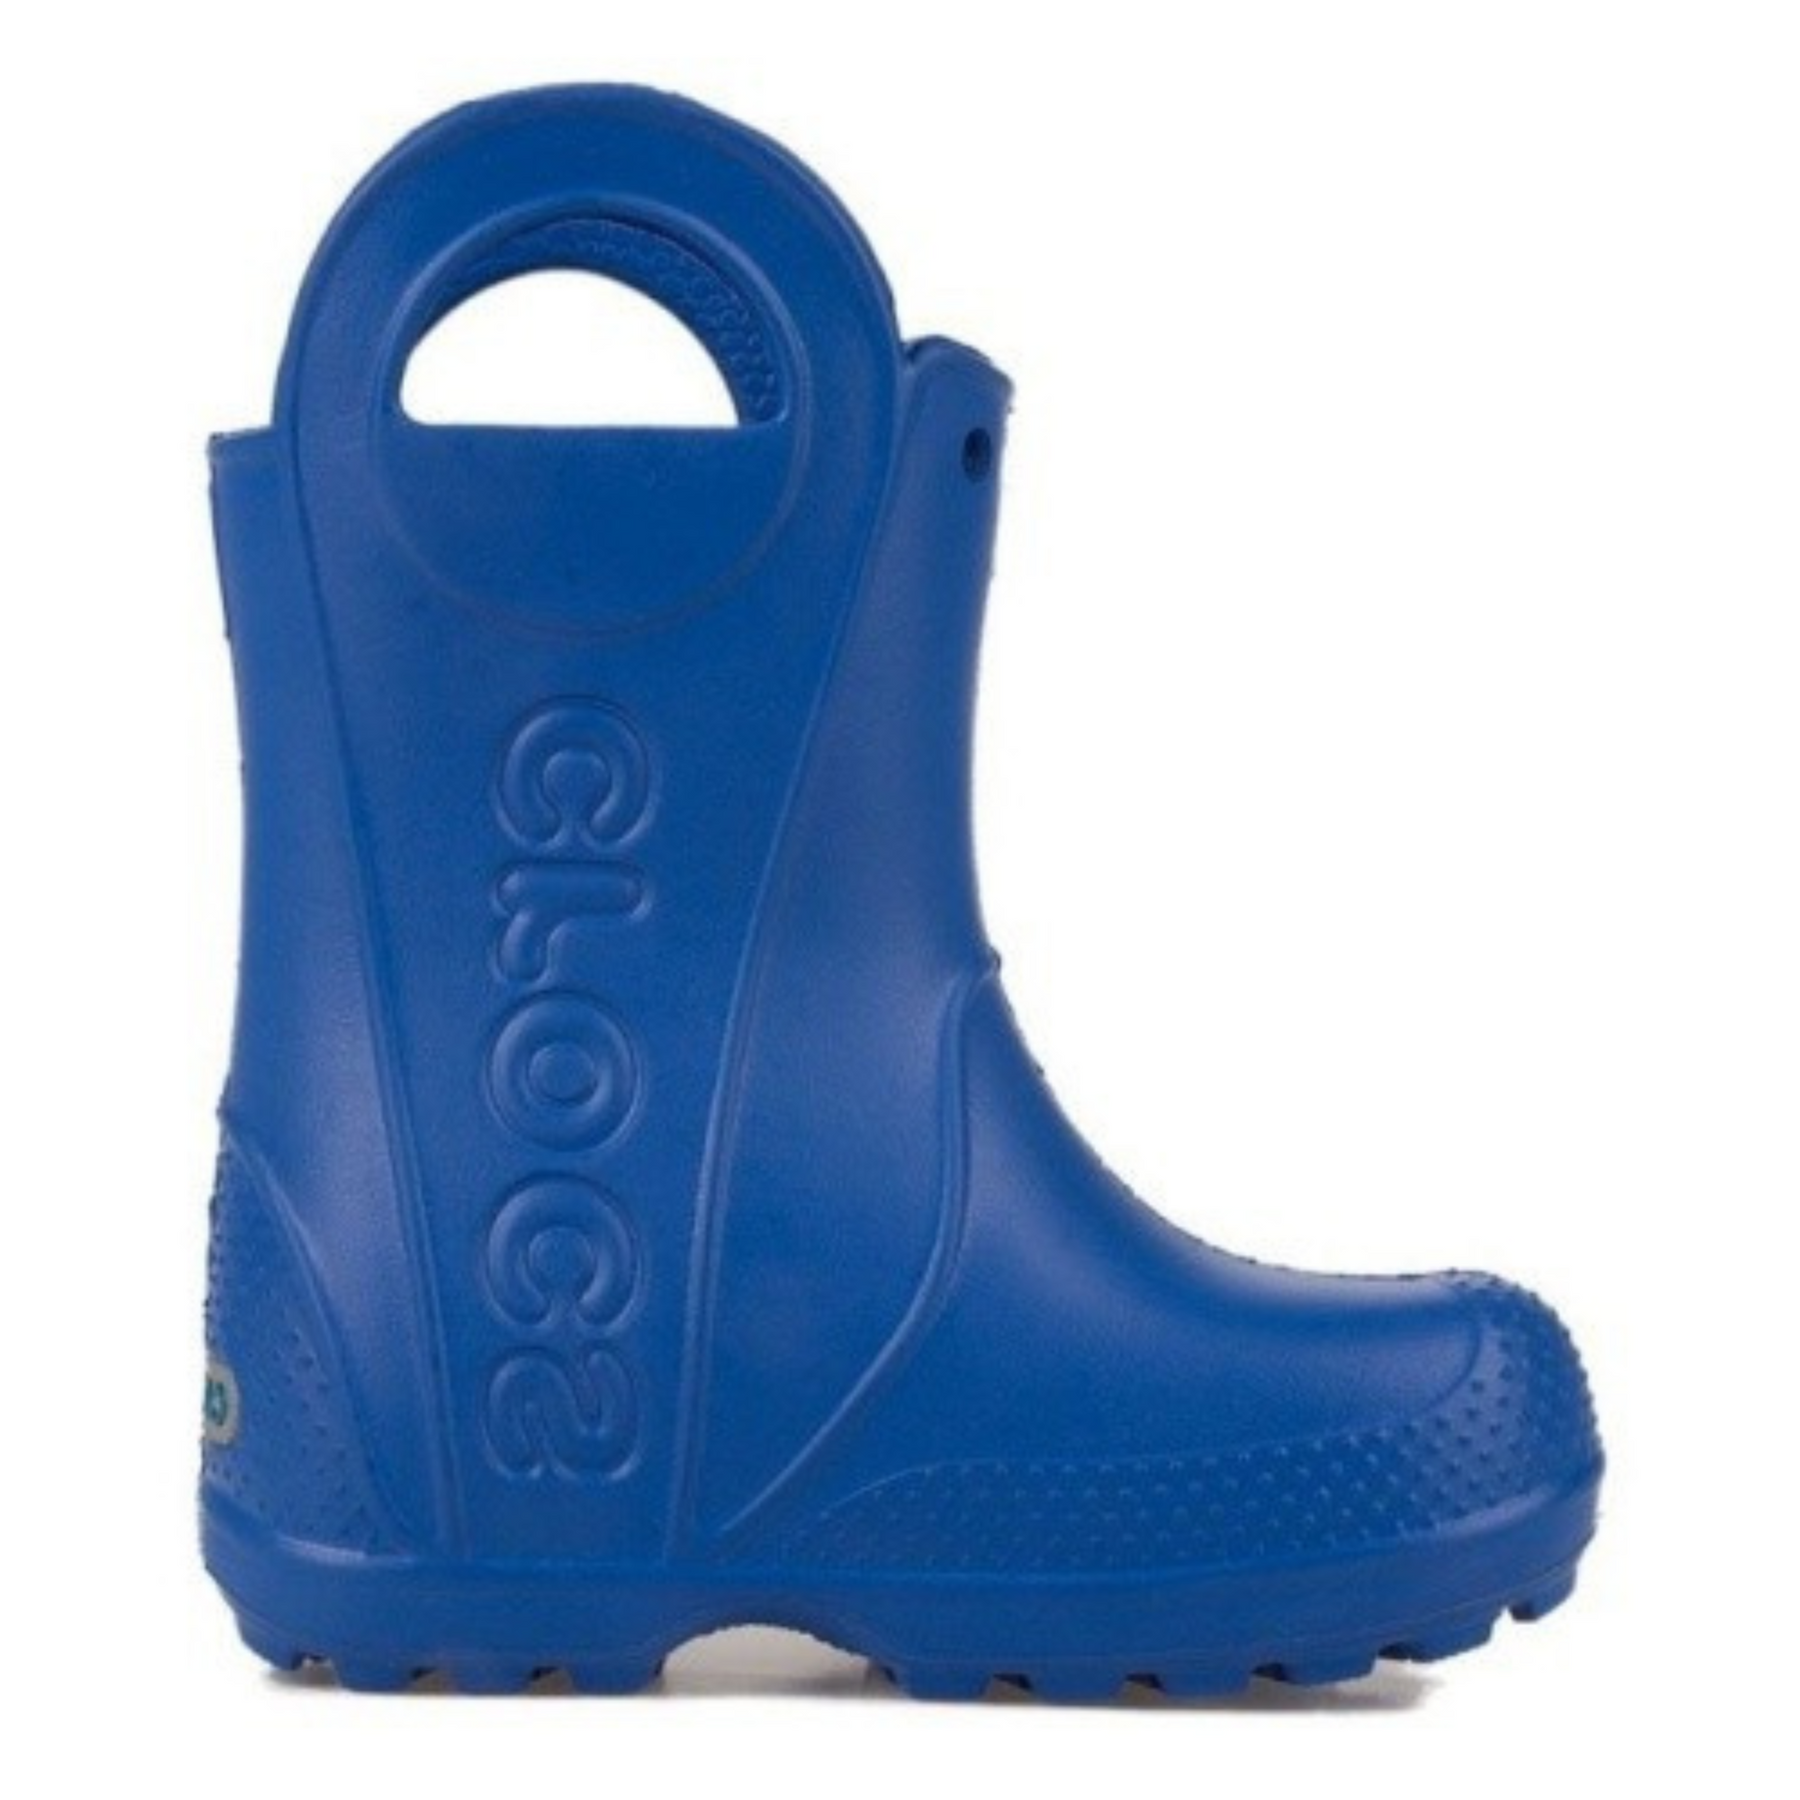 Crocs Kids Handle It Rain Boot Детские Резиновые сапоги Крокс Хэндл Ит Рэйн Бут 26 12803 фото спеши выбрать самые модные товары Crocs